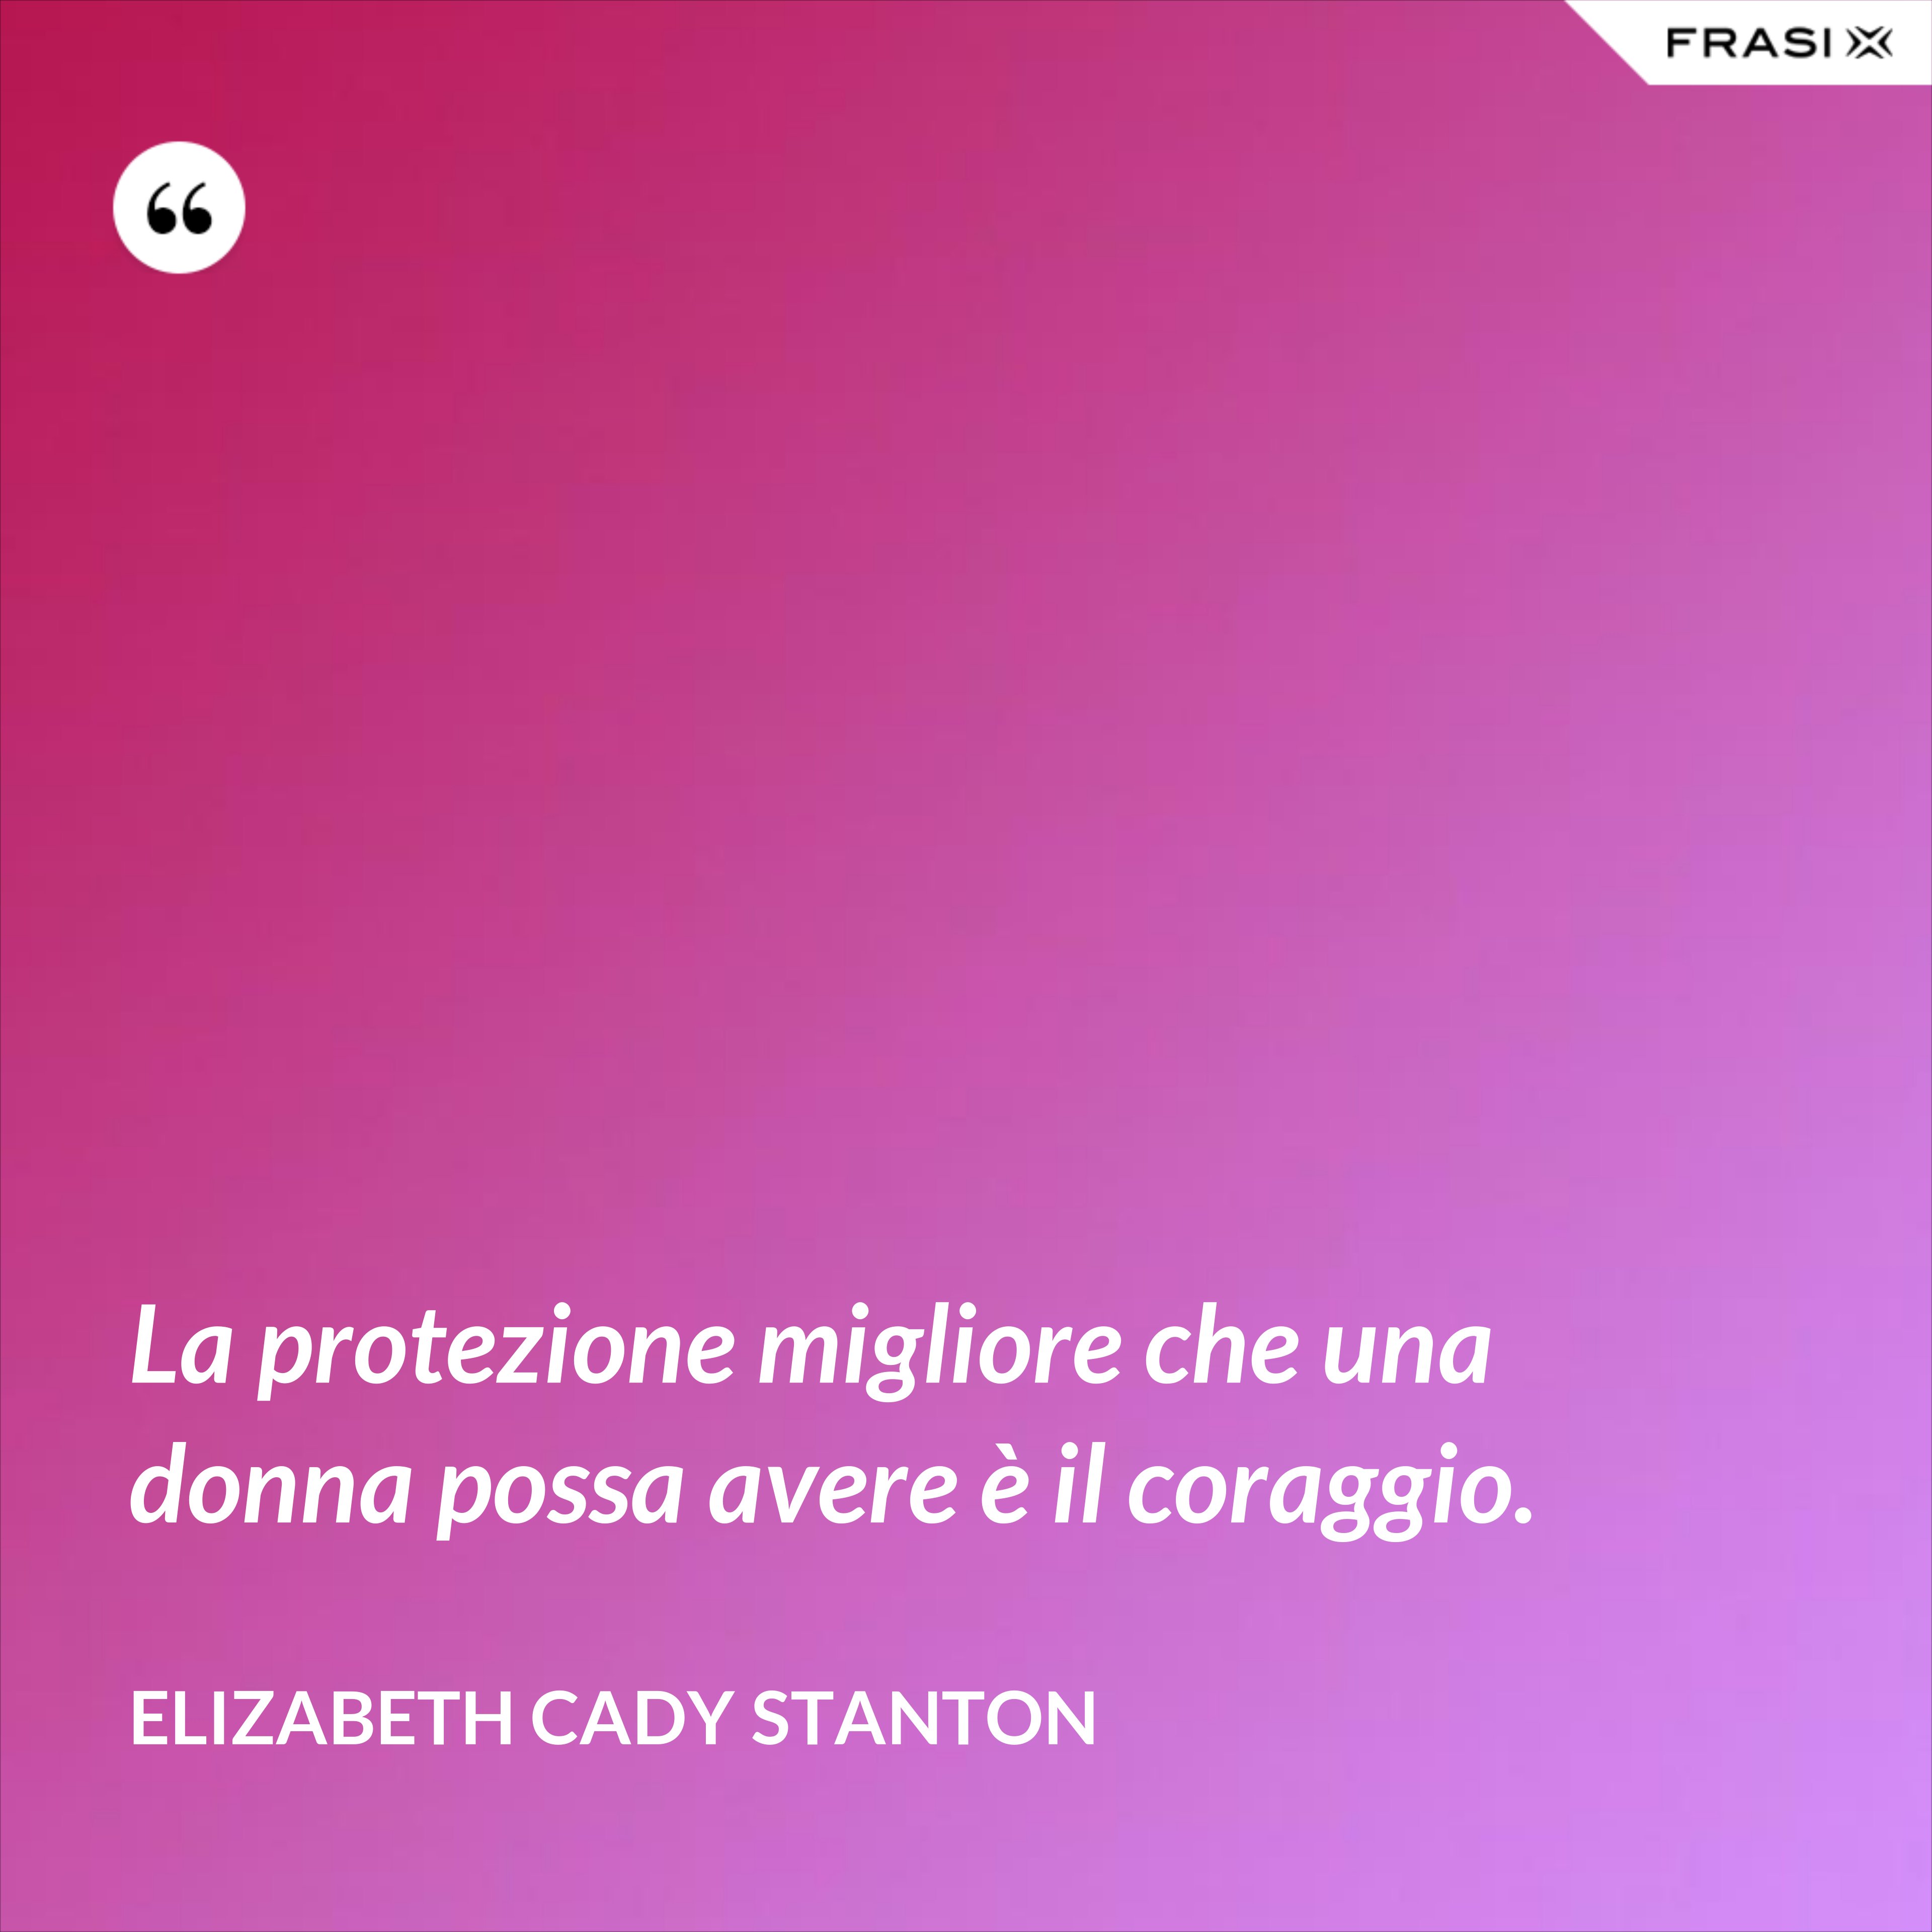 La protezione migliore che una donna possa avere è il coraggio. - Elizabeth Cady Stanton